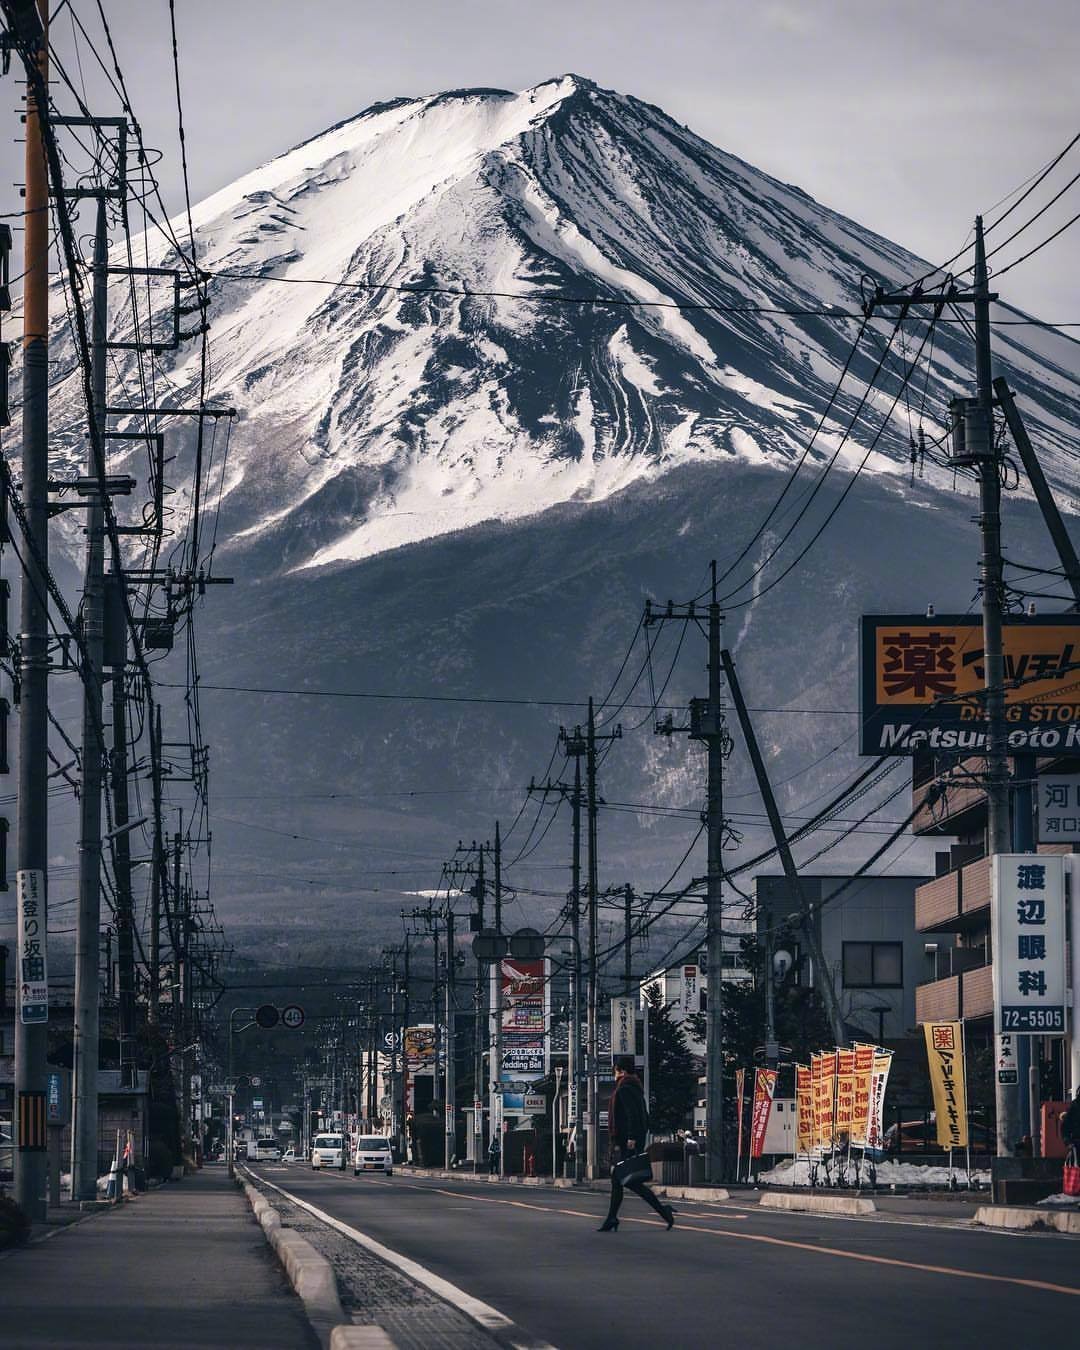 大家有机会一定要去看看看到富士山就想到陈奕迅的《富士山下》这首歌